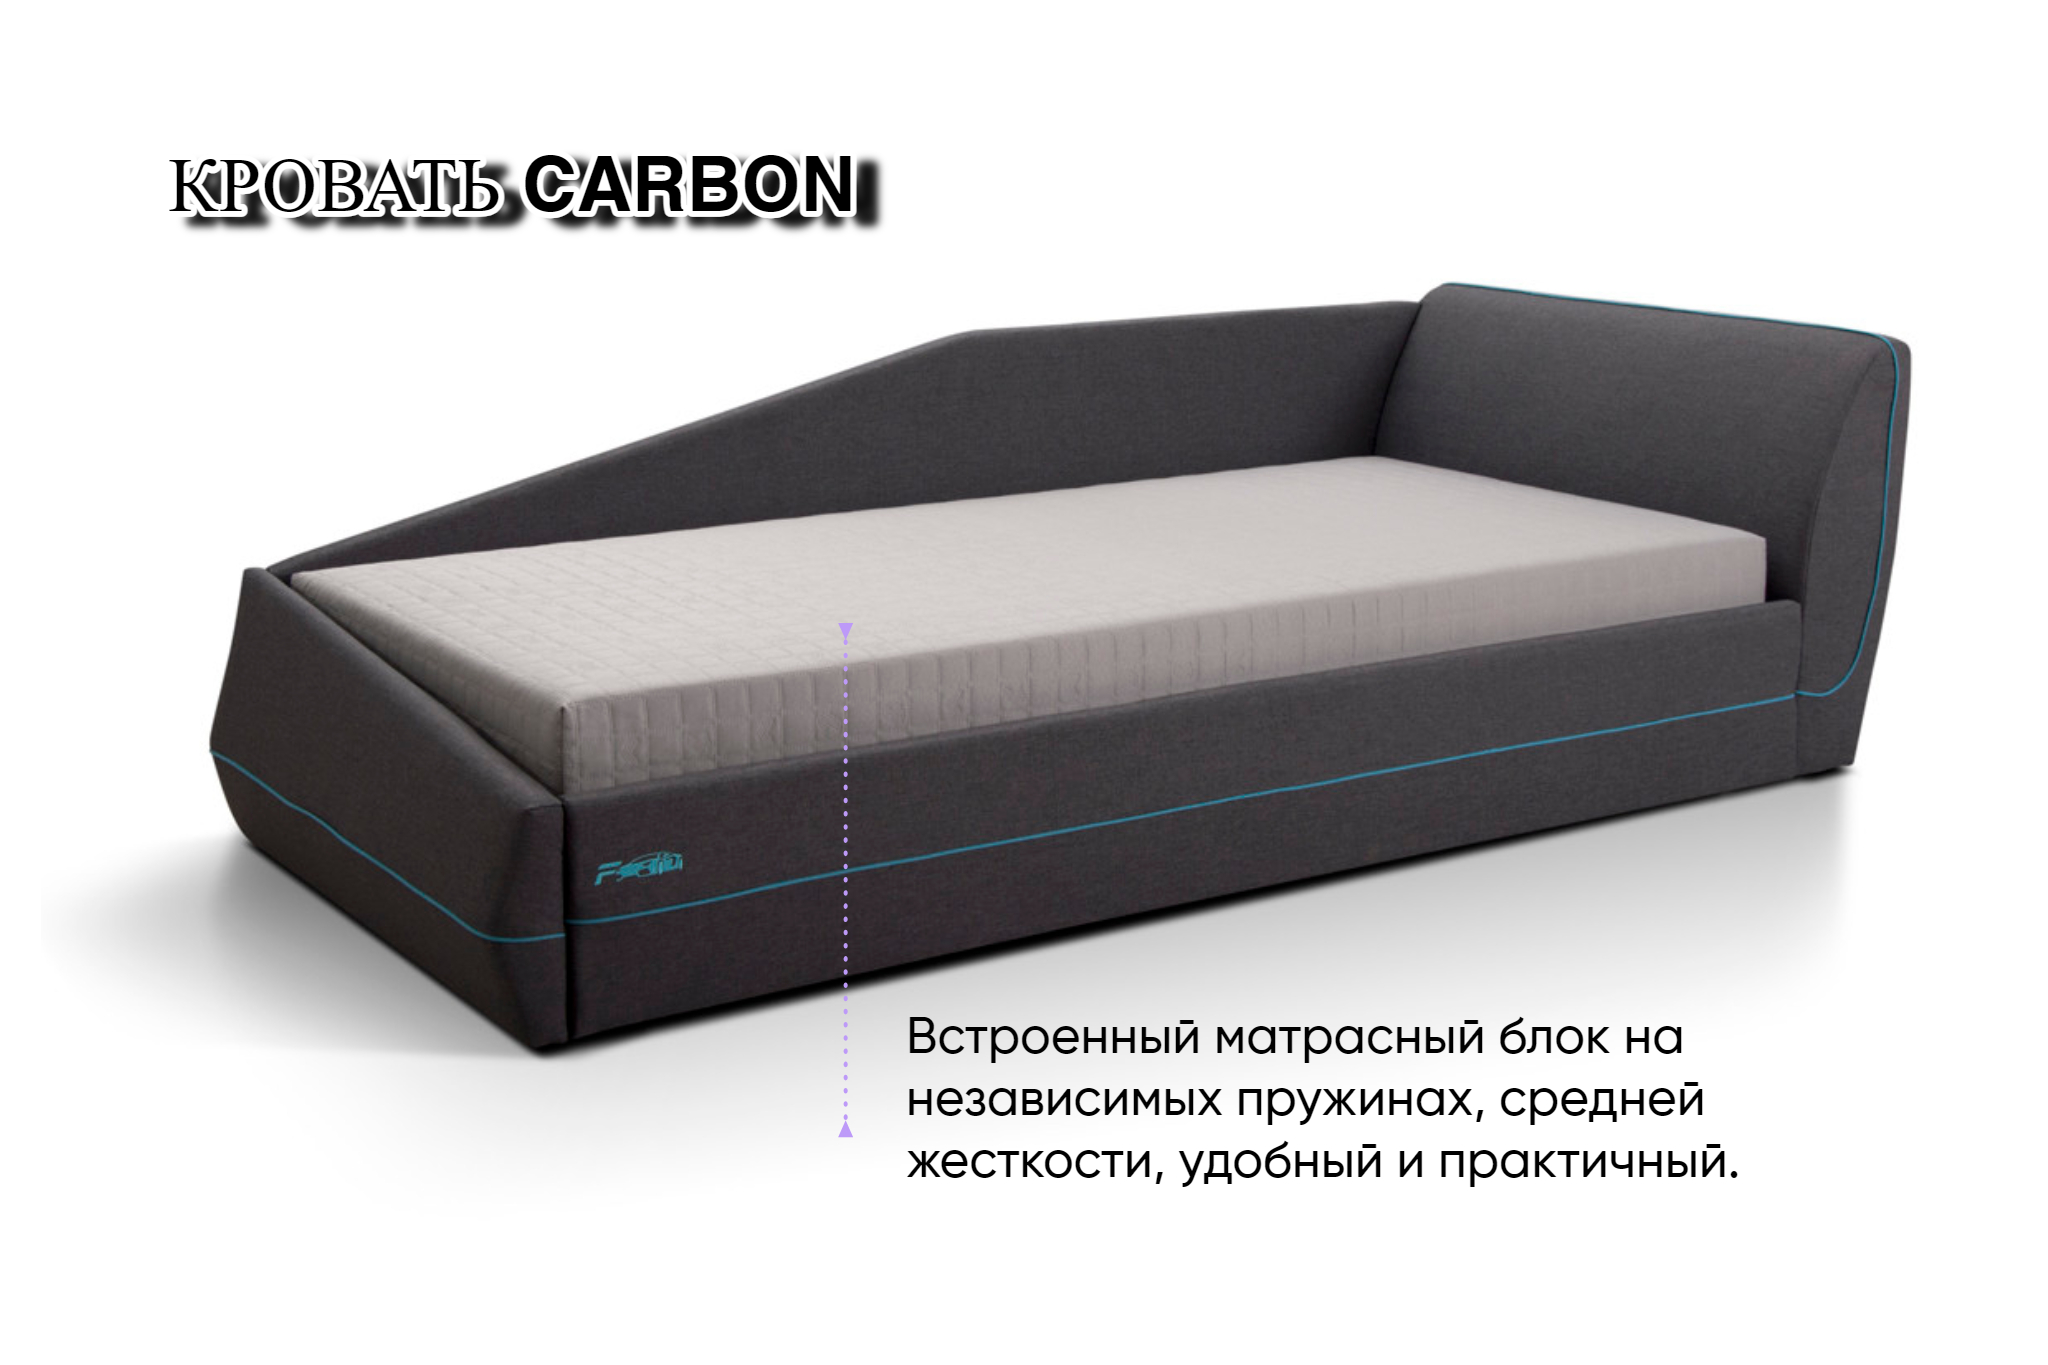 Кровать подростковая Форсаж (голубой) с матрасным блоком